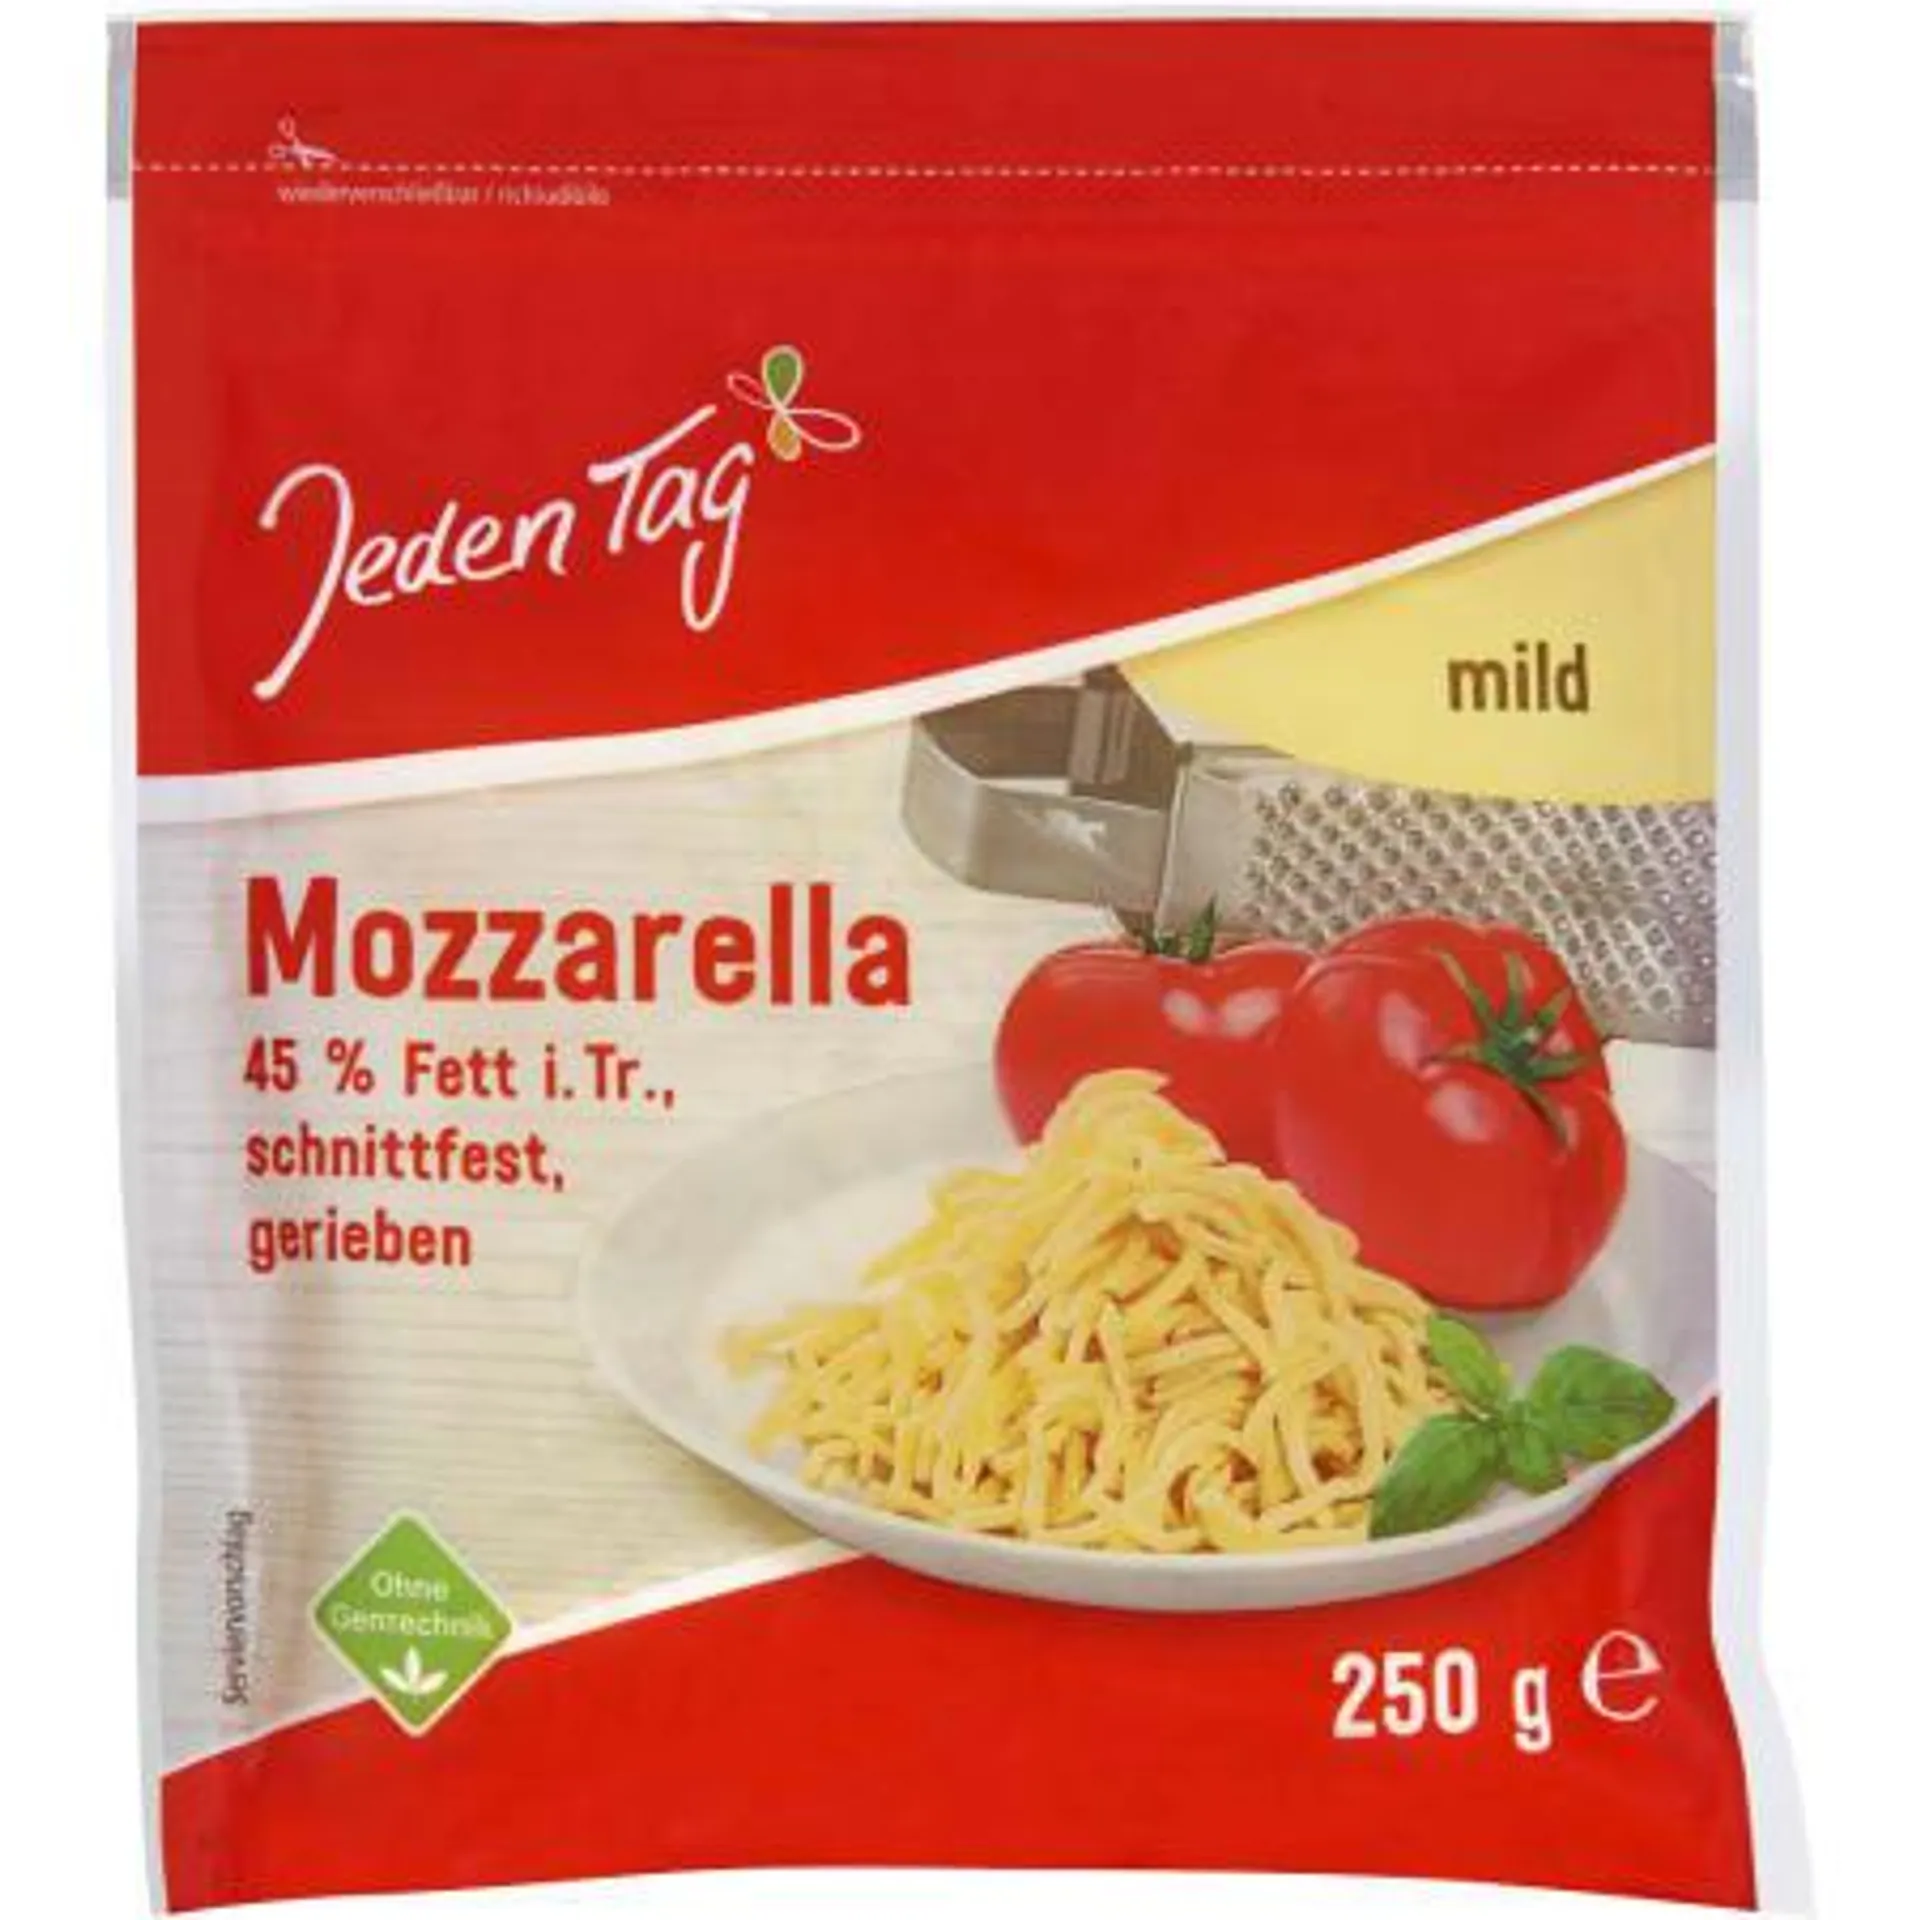 Mozzarella gerieben